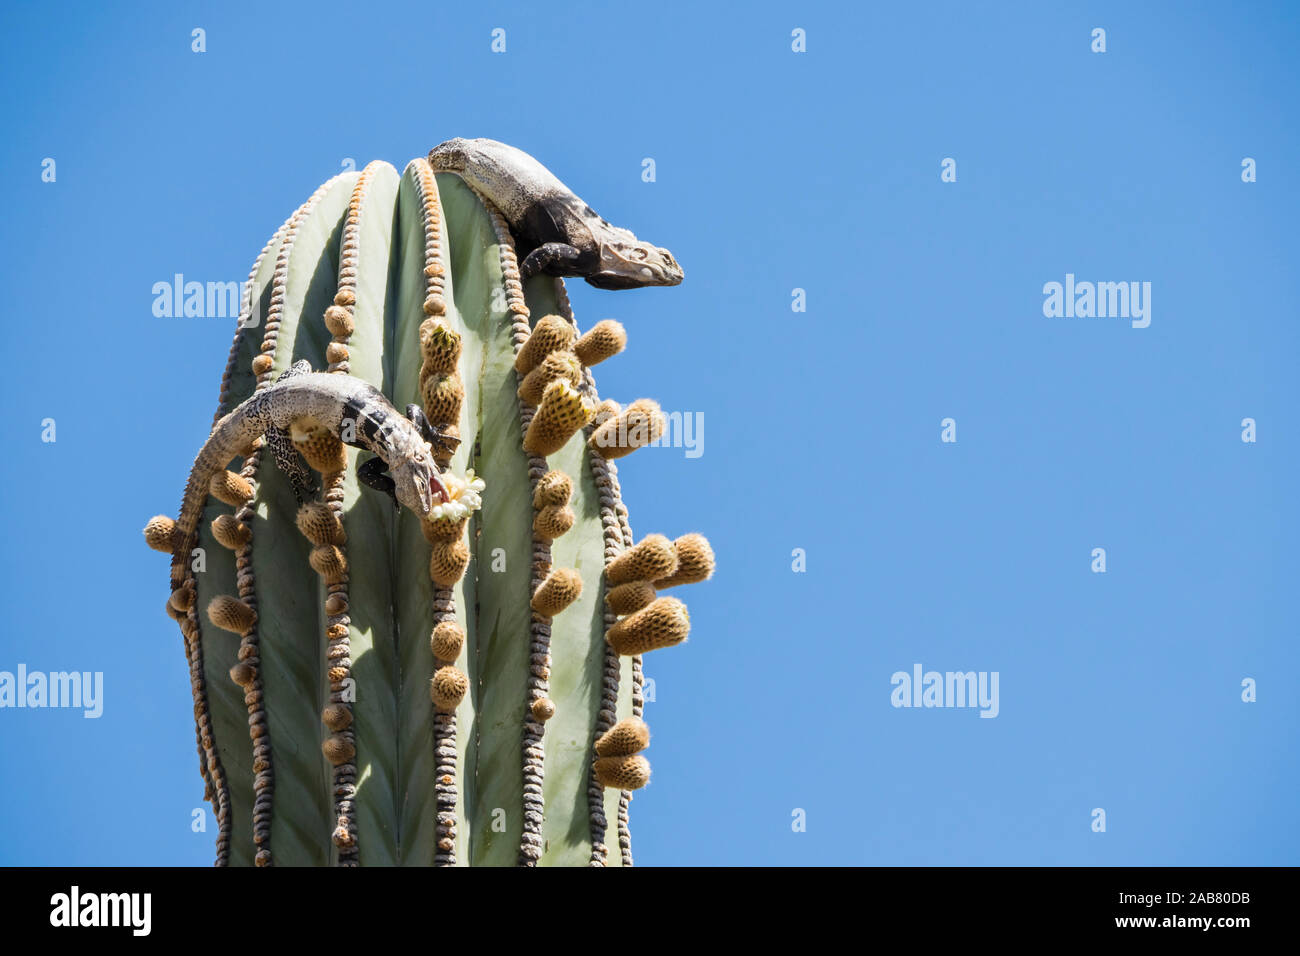 San Esteban iguanes à queue épineuse (Ctenosaura conspicuosa), les cactus, Isla San Esteban, Basse Californie, Mexique, Amérique du Nord Banque D'Images